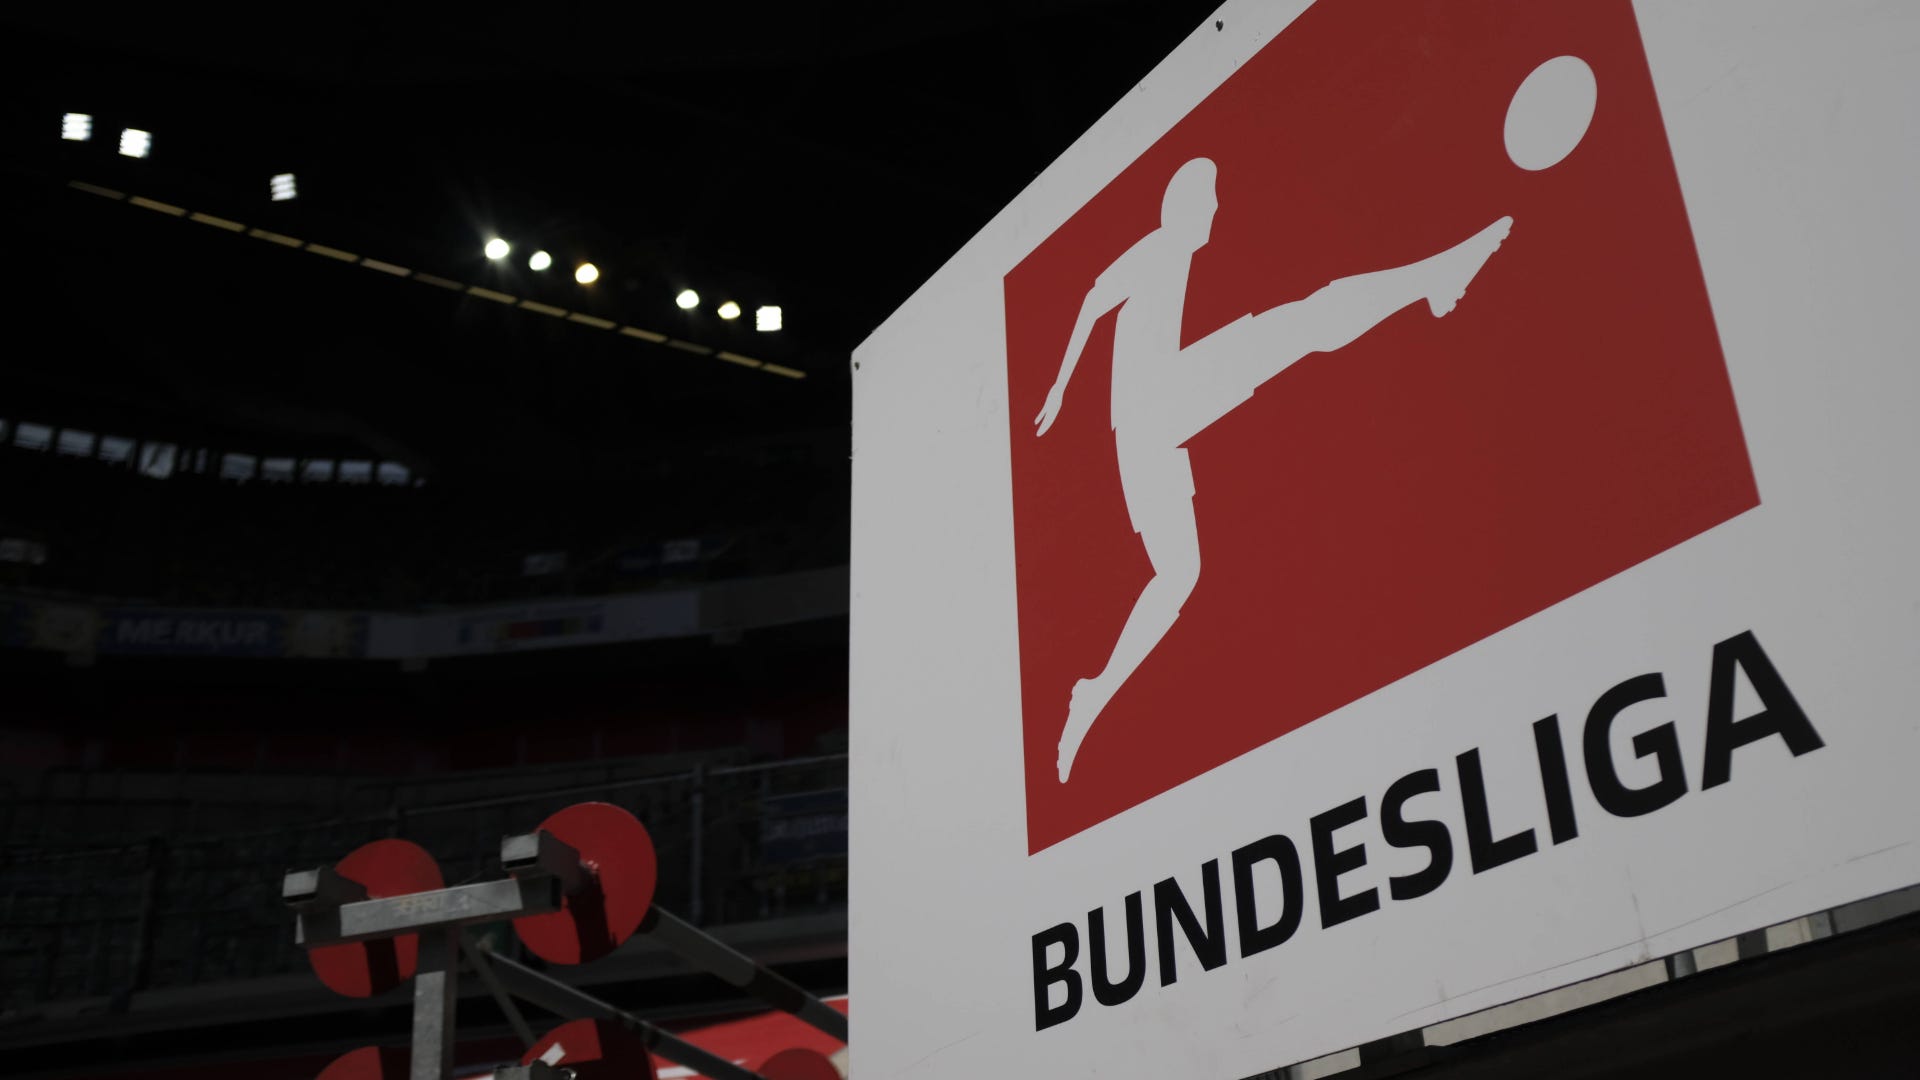 Bundesliga am Samstag live sehen So werden die Spiele heute im TV und LIVE-STREAM gezeigt / übertragen Goal Deutschland